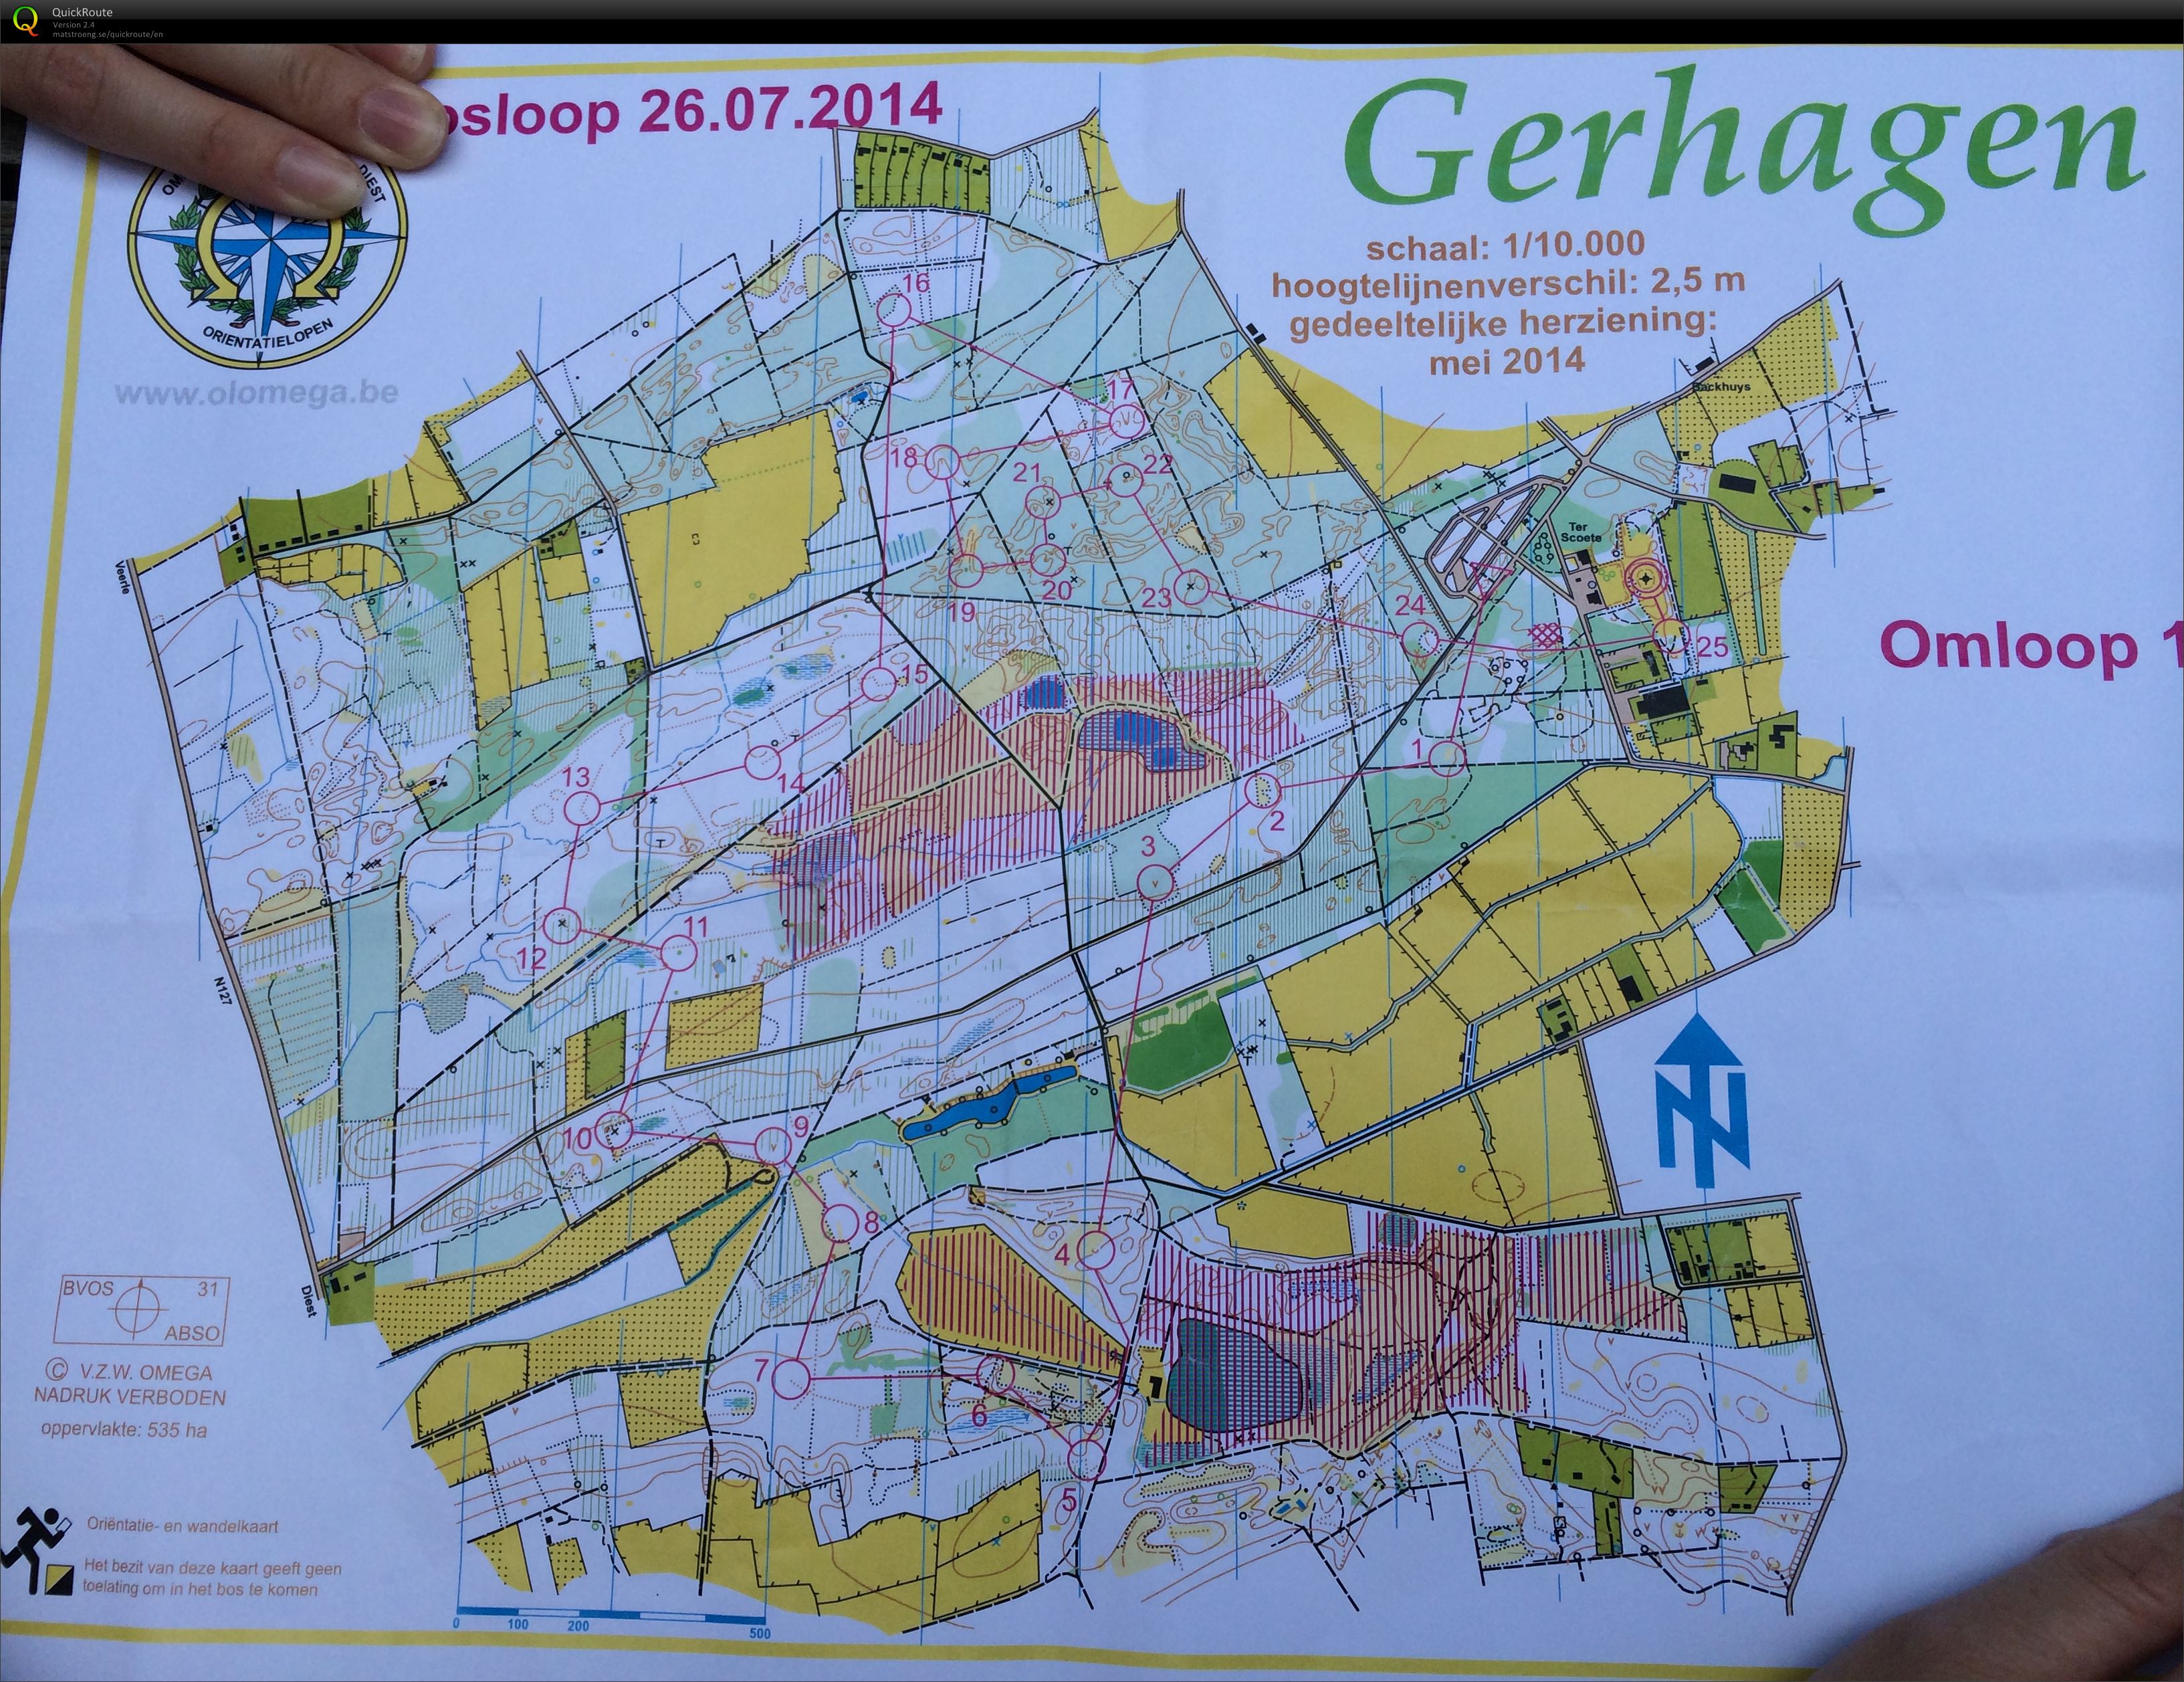 Regionale Gerhagen (26/07/2014)